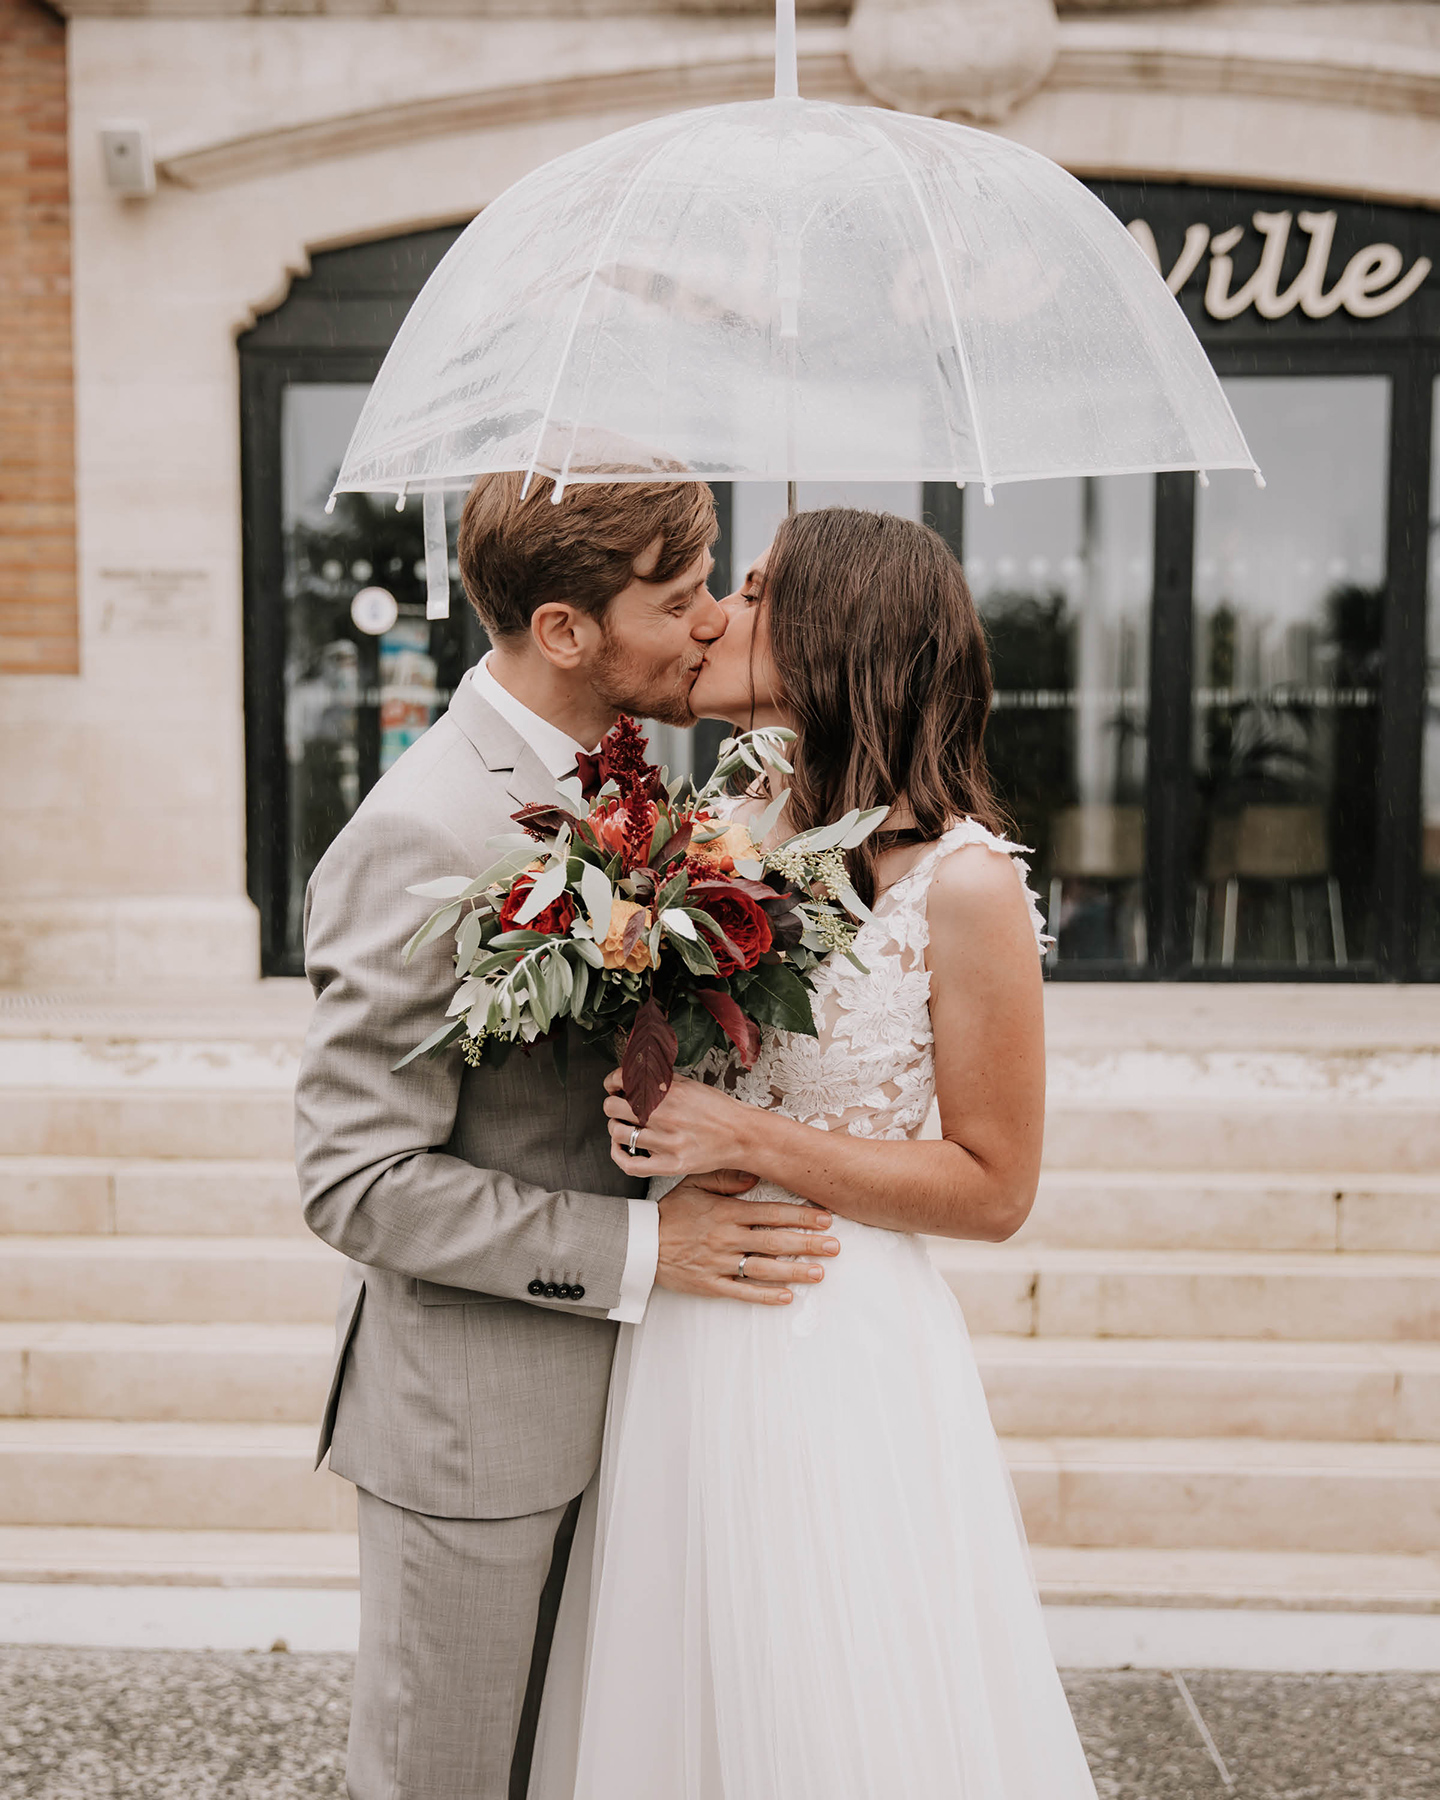 Ein sich küssendes Hochzeitspaar steht vor der Location. Über ihren Köpfen halten sie einen Regenschirm.